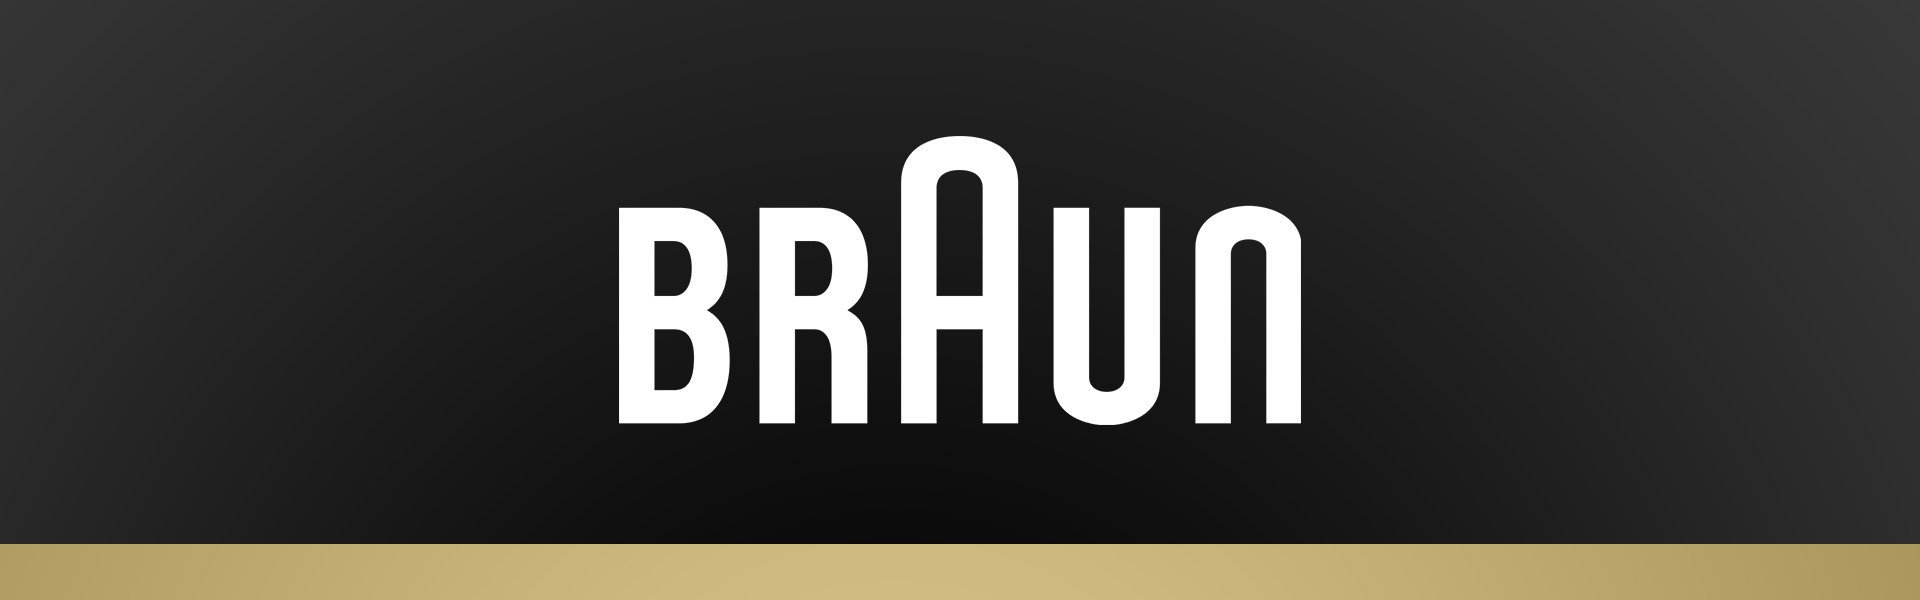 Pardel Braun Series 9 Pro 9467cc Braun